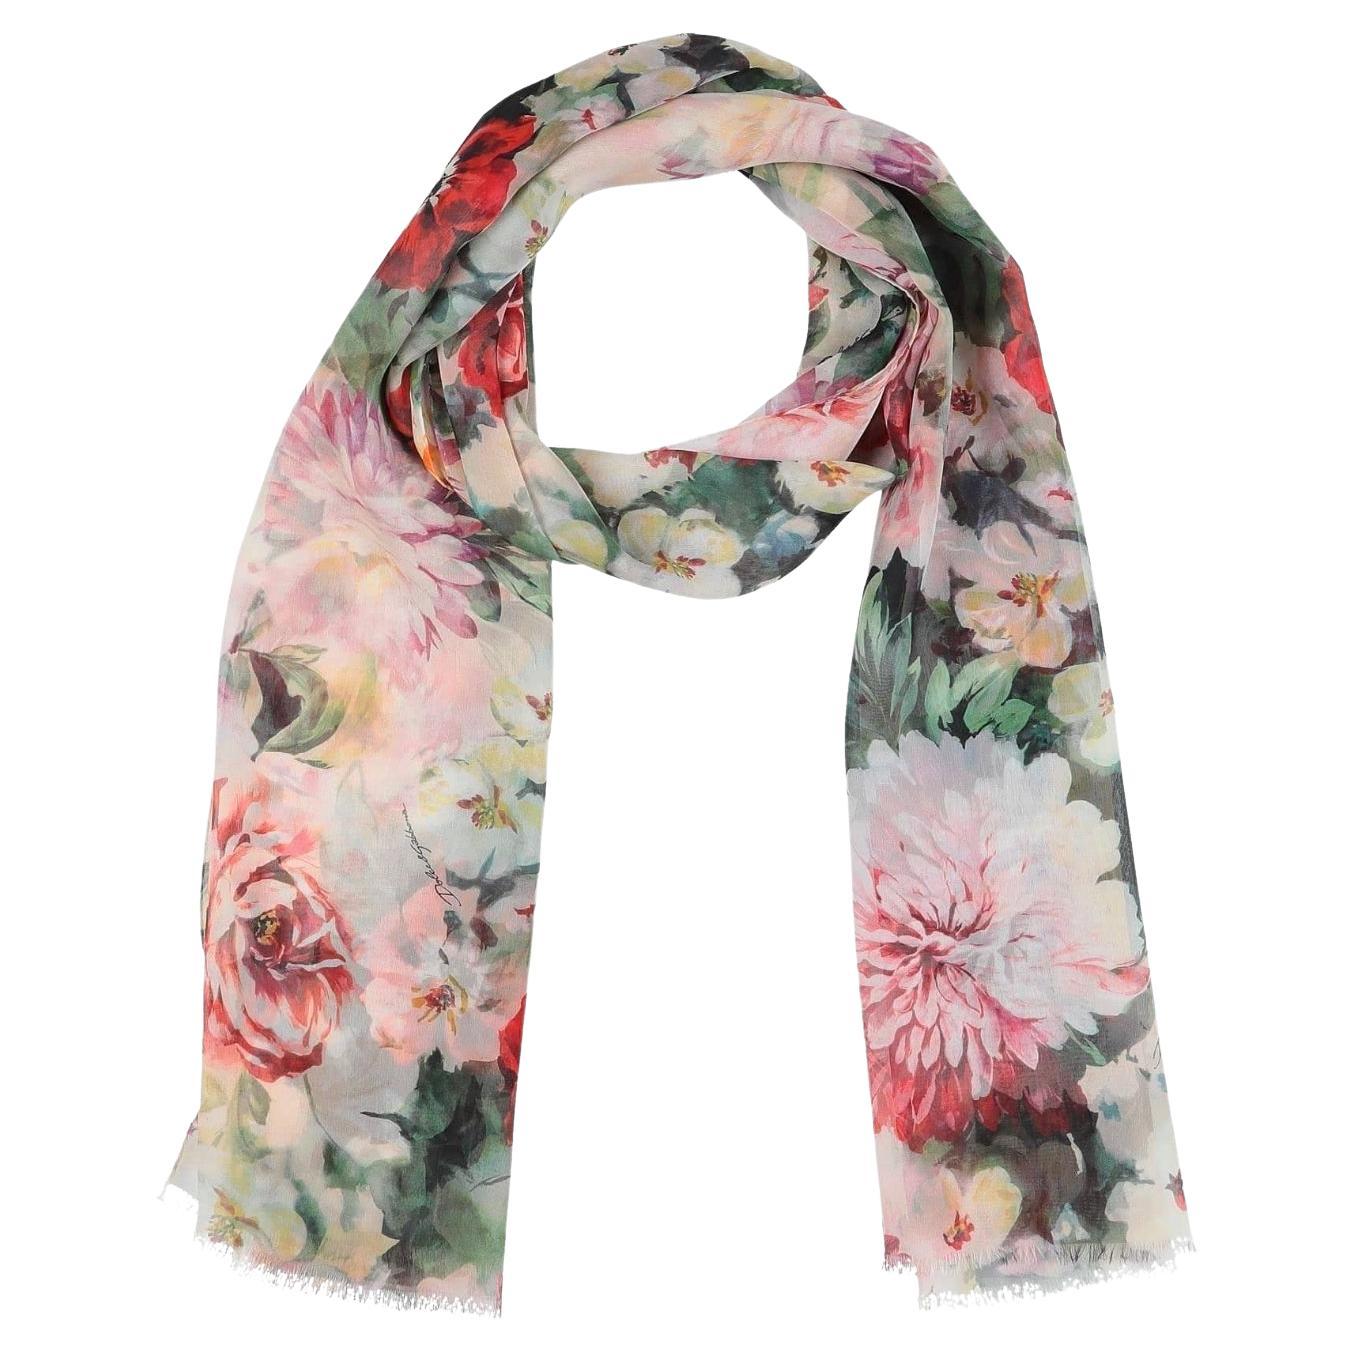 Flower Scarves - 64 For Sale on 1stDibs | leonard scarf, gucci 